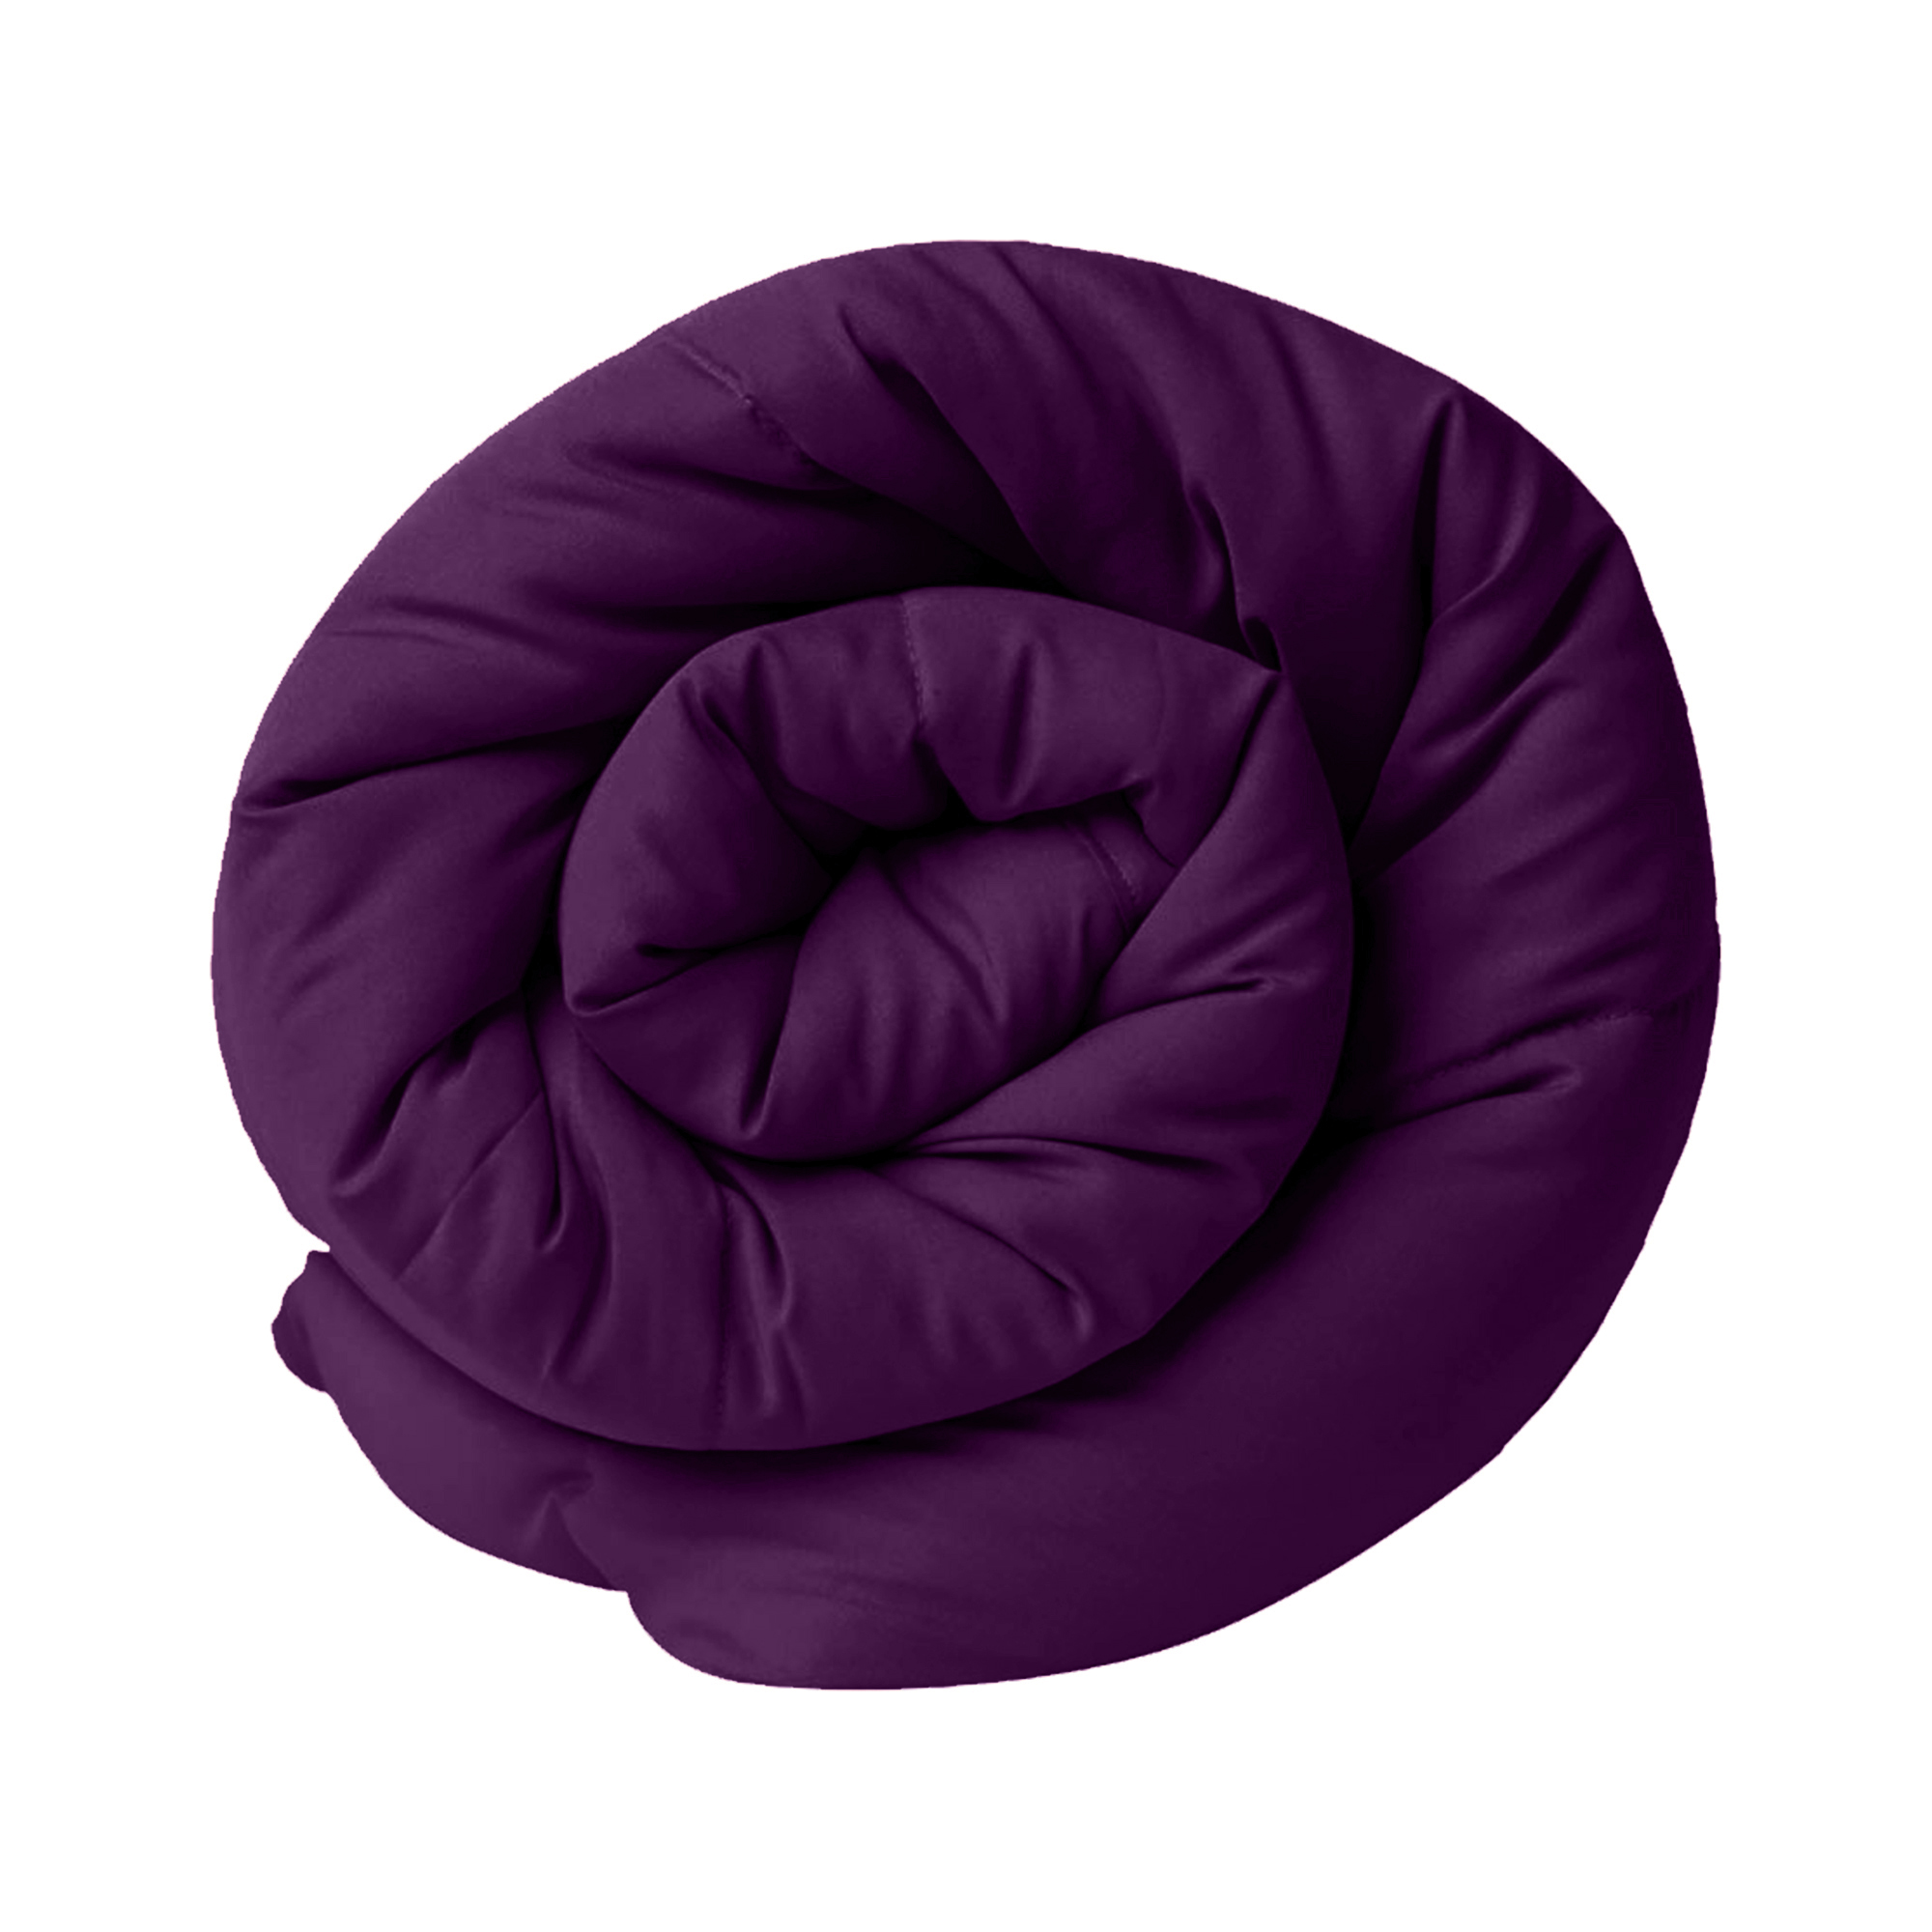 Purple Green Double Bed Comforter